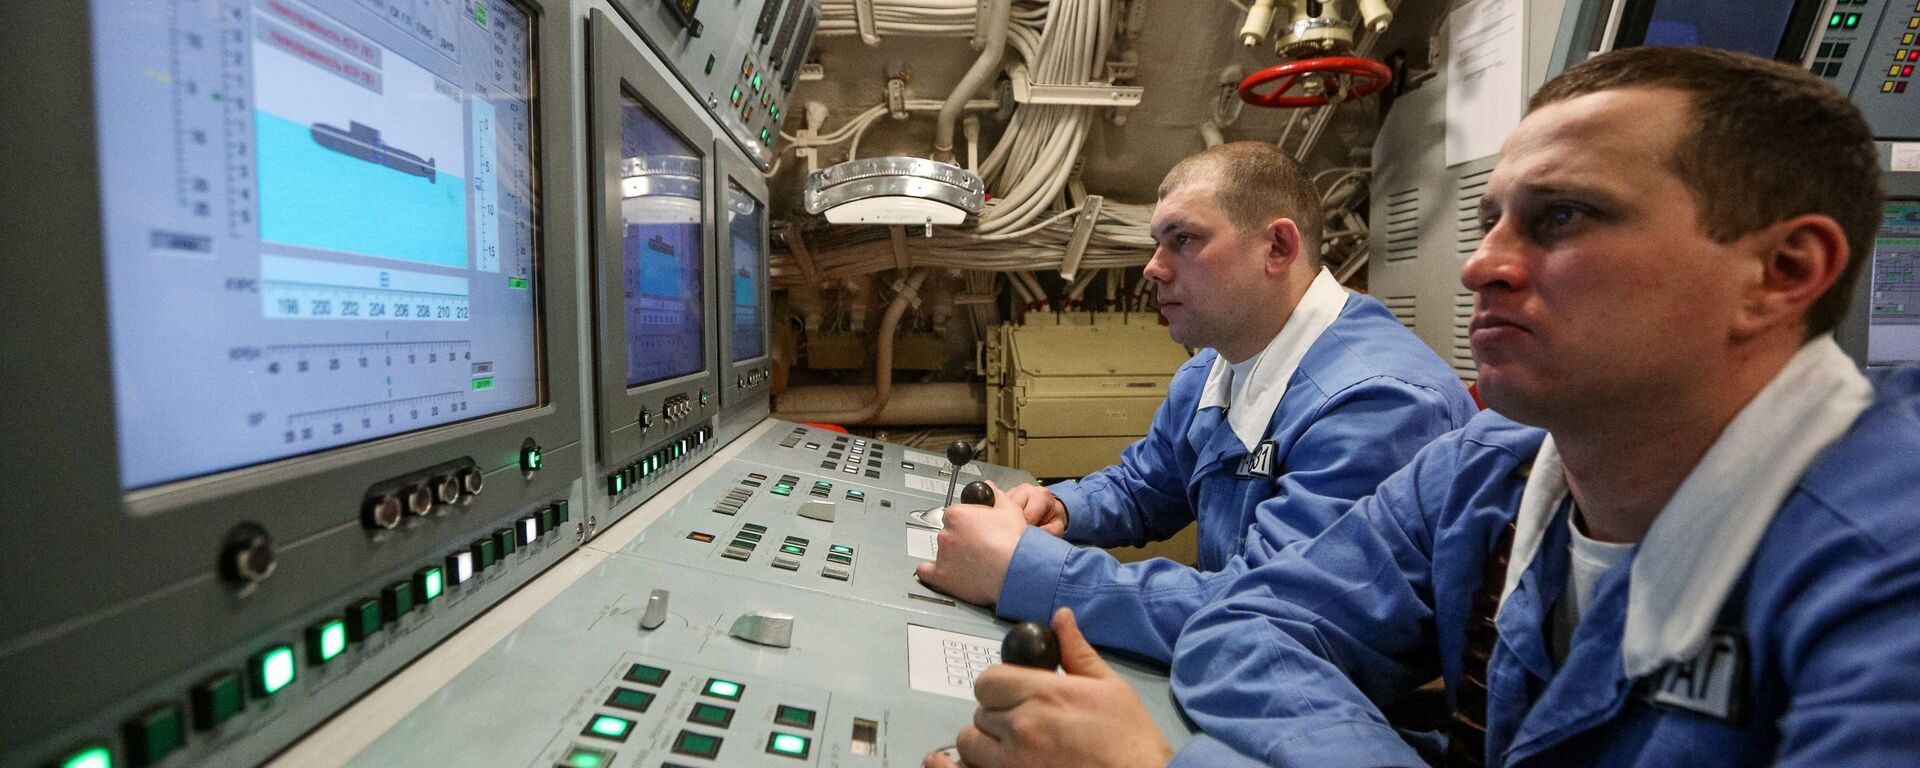 Центральный пост атомной подводной лодки К-535 Юрий Долгорукий - Sputnik Latvija, 1920, 14.07.2020